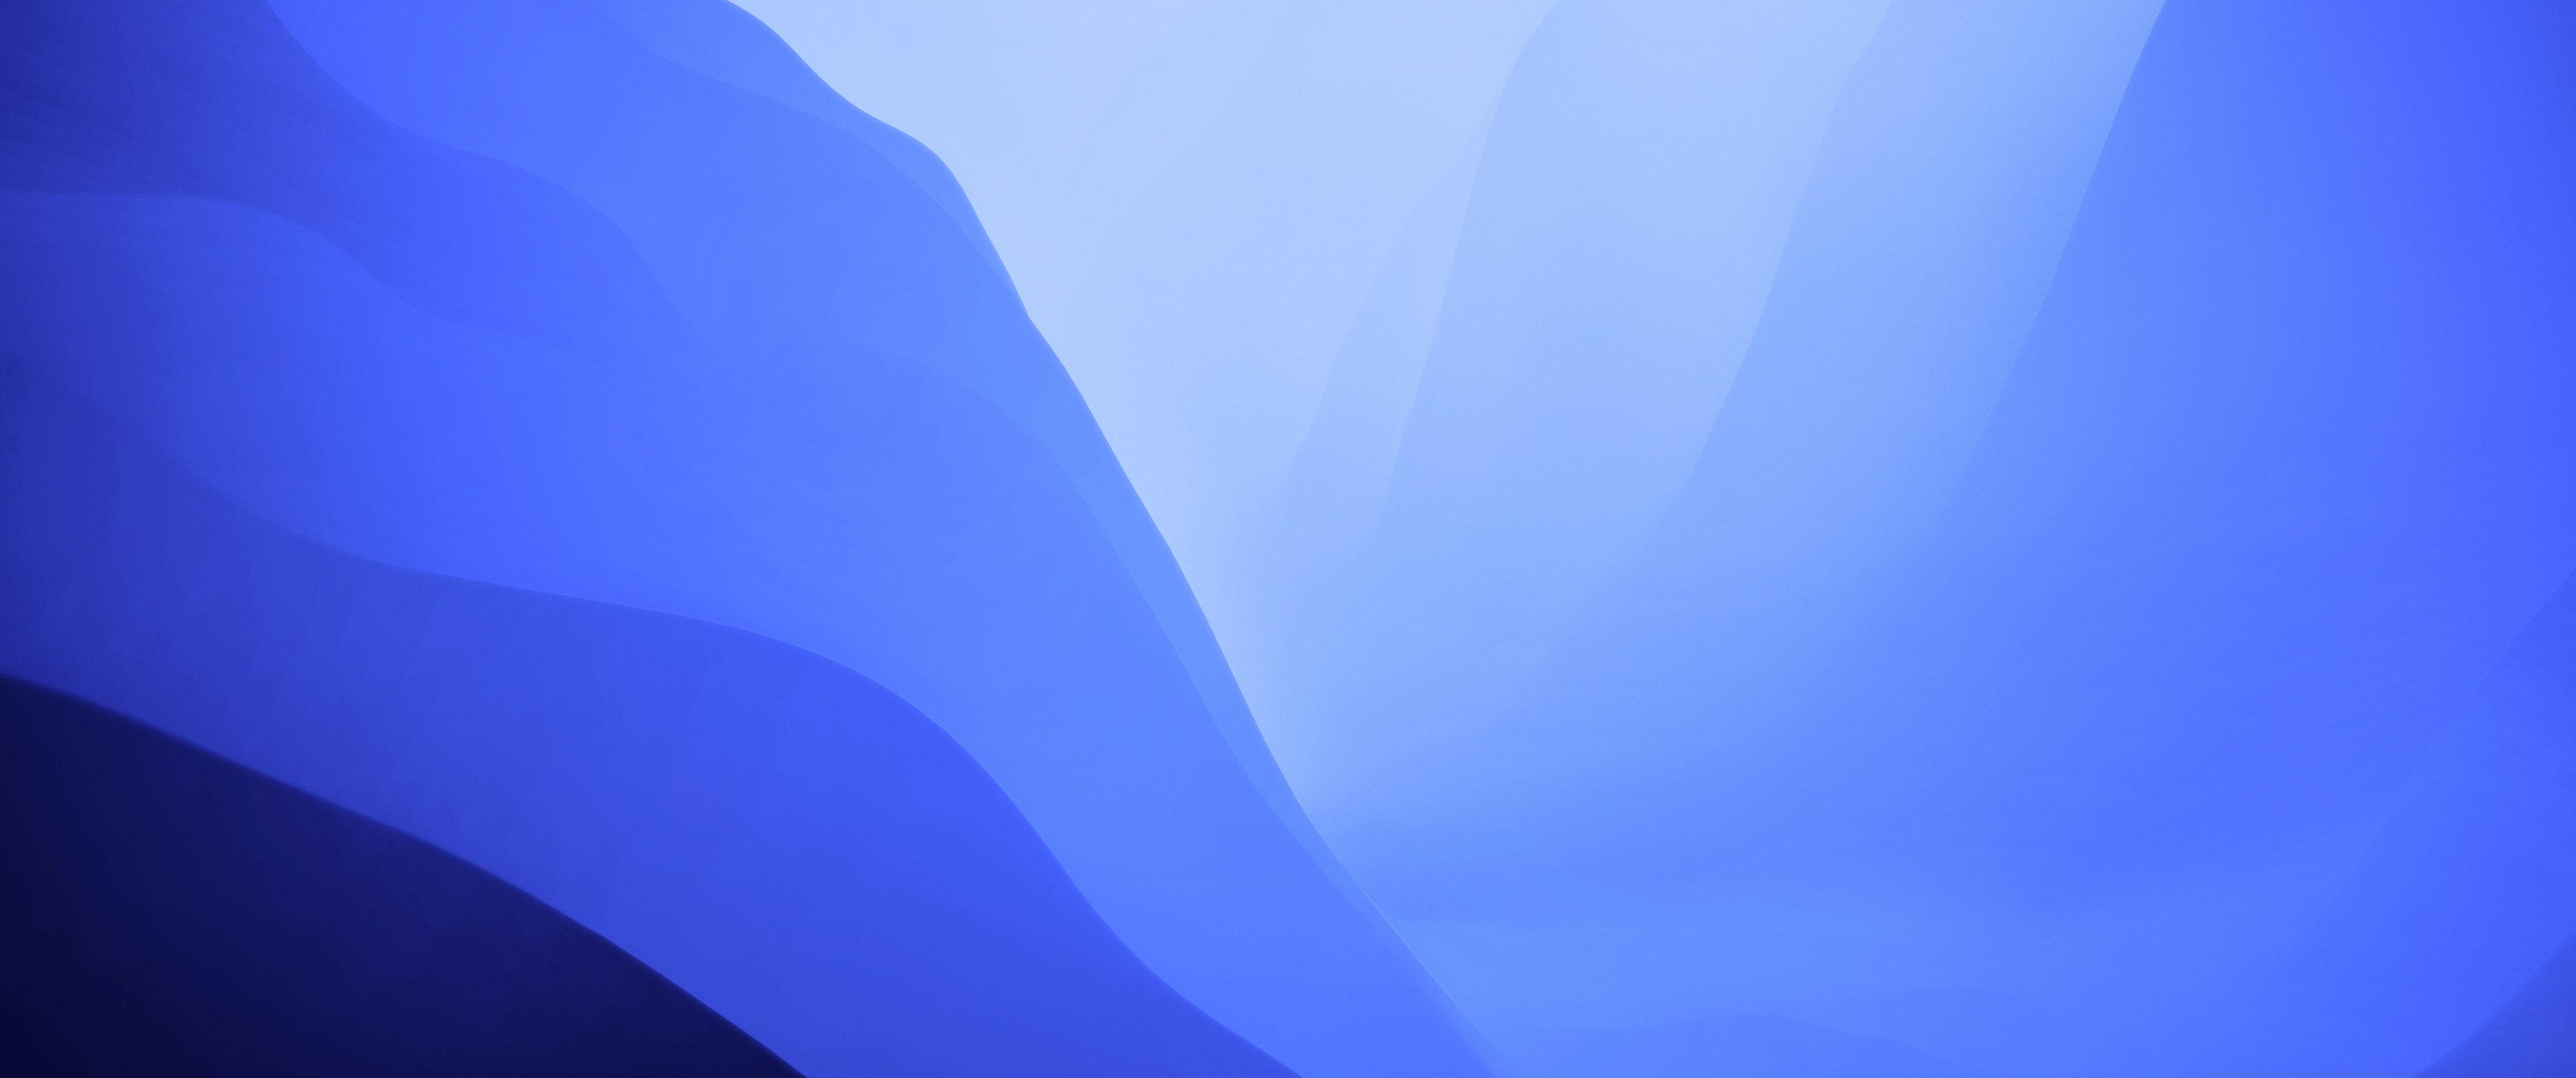 Hình nền macOS Monterey với không gian màu xanh gradient đầy sang trọng và duyên dáng sẽ khiến màn hình của bạn thêm bắt mắt. Không chỉ đơn thuần là hình nền đẹp, mà chất lượng 4K sắc nét của nó sẽ đem đến trải nghiệm thực sự tuyệt vời. Hãy để hình nền này tạo điểm nhấn cho ngày làm việc của bạn!